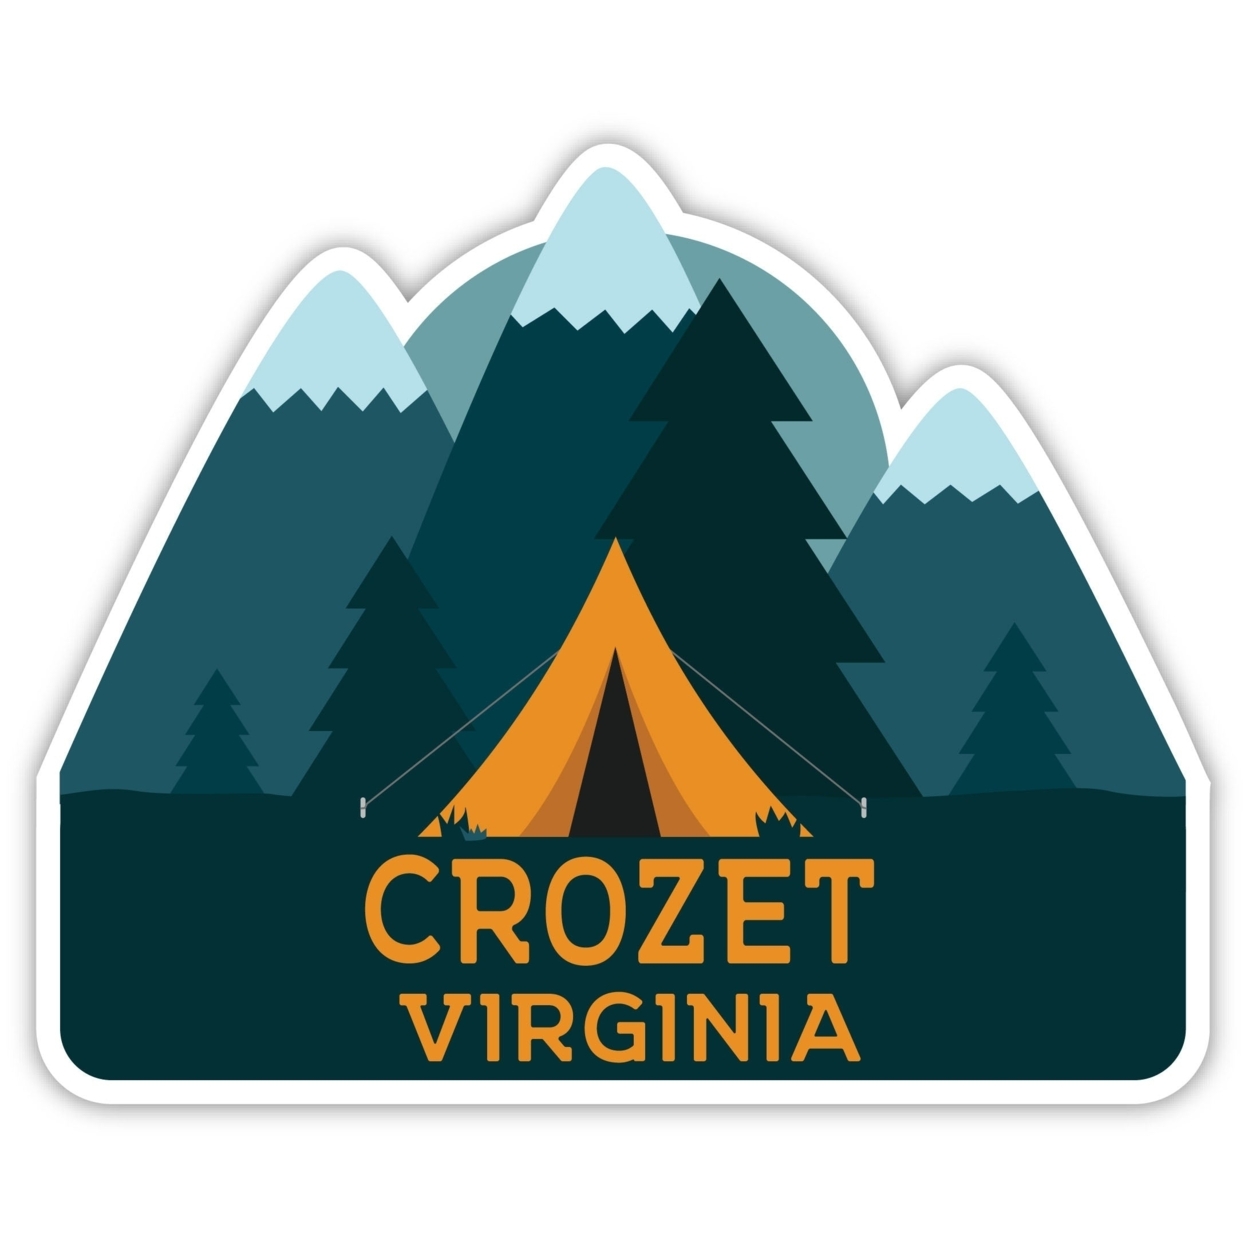 Crozet Virginia Souvenir Decorative Stickers (Choose Theme And Size) - Single Unit, 2-Inch, Tent